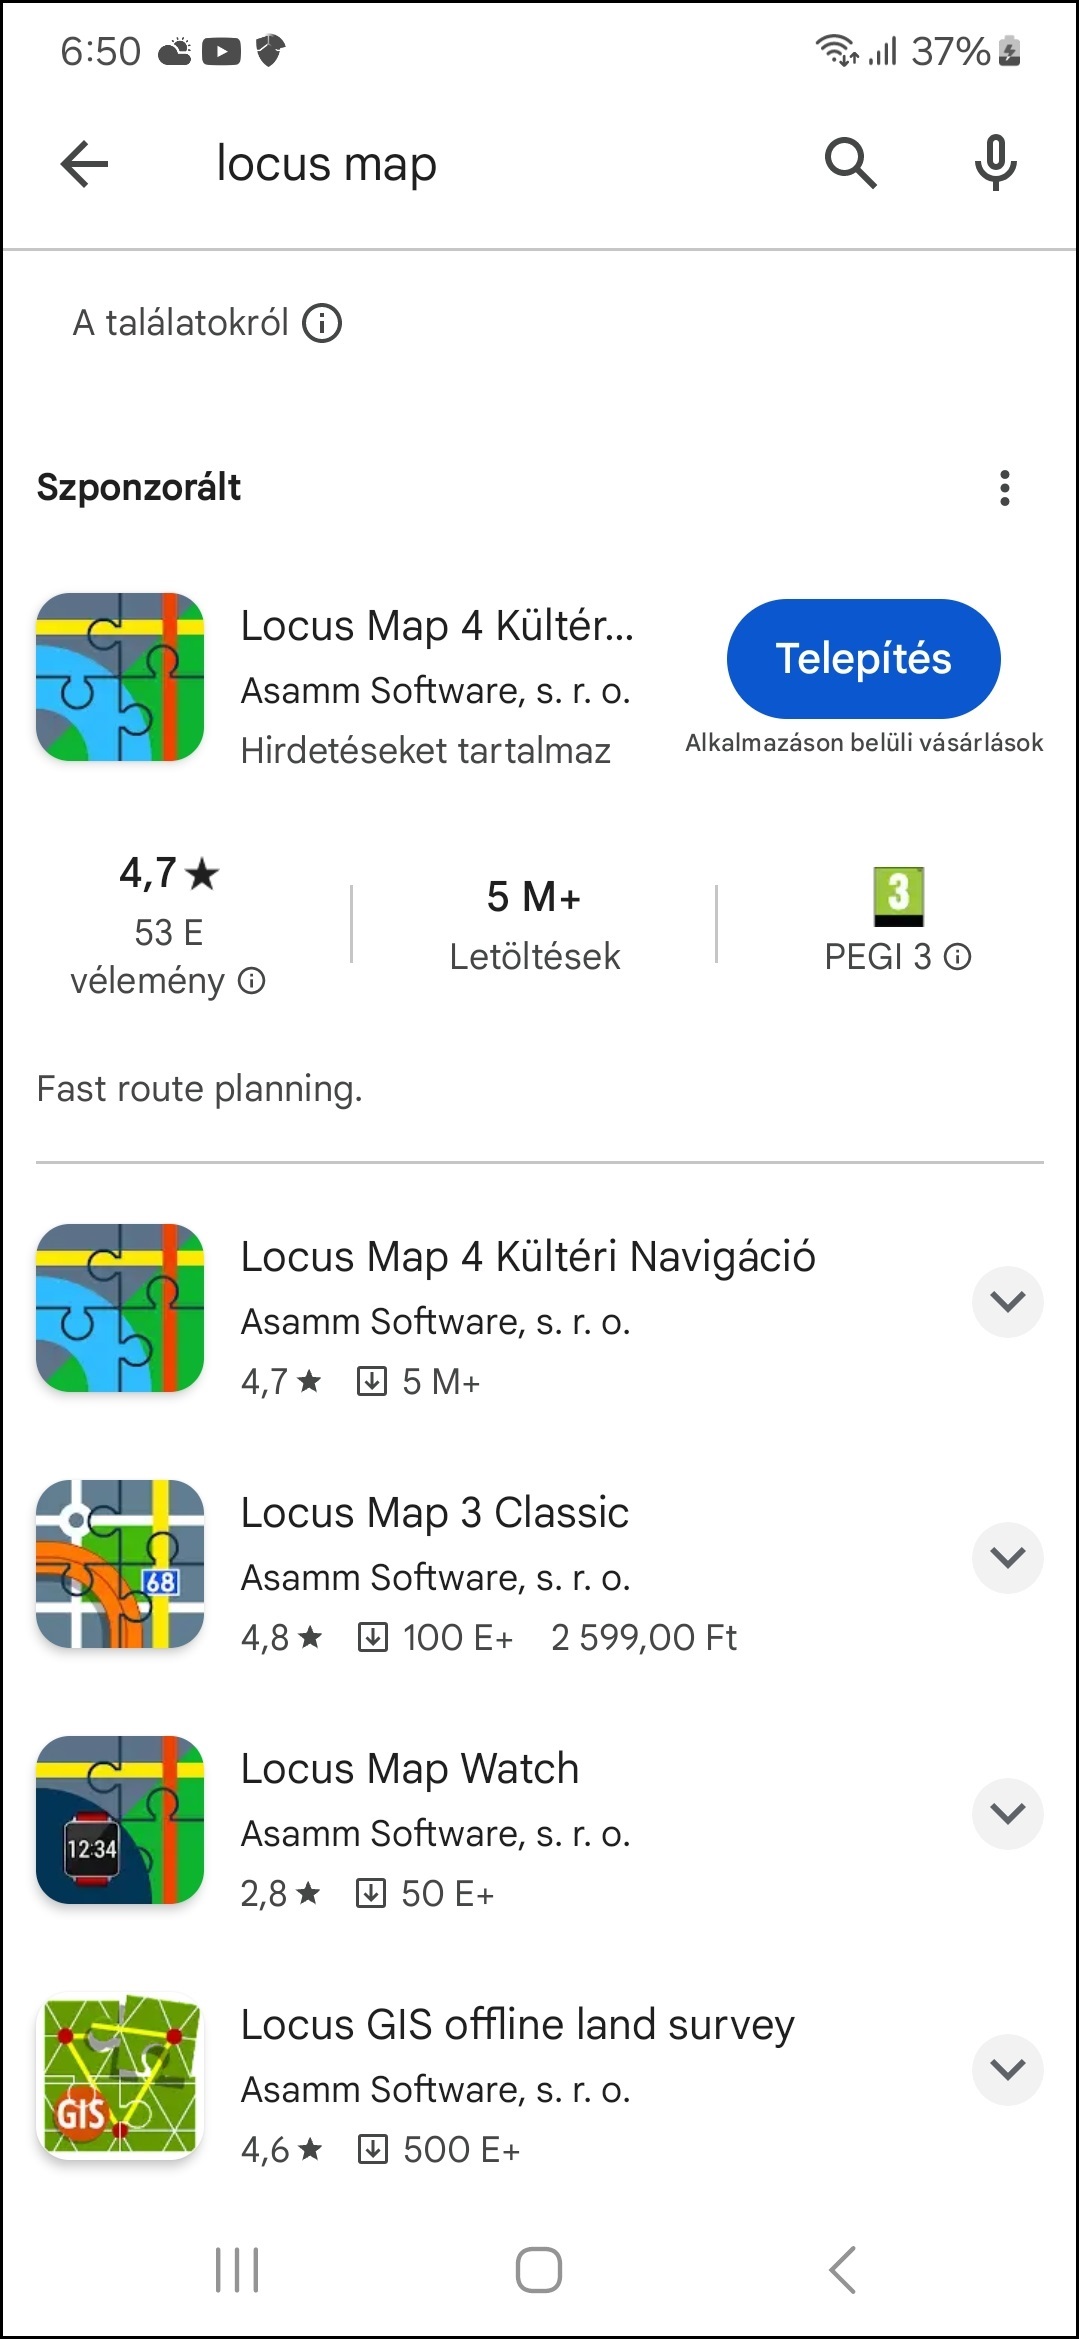 Keressük meg a Google Play áruházban a Locus Map 4 alkalmazást